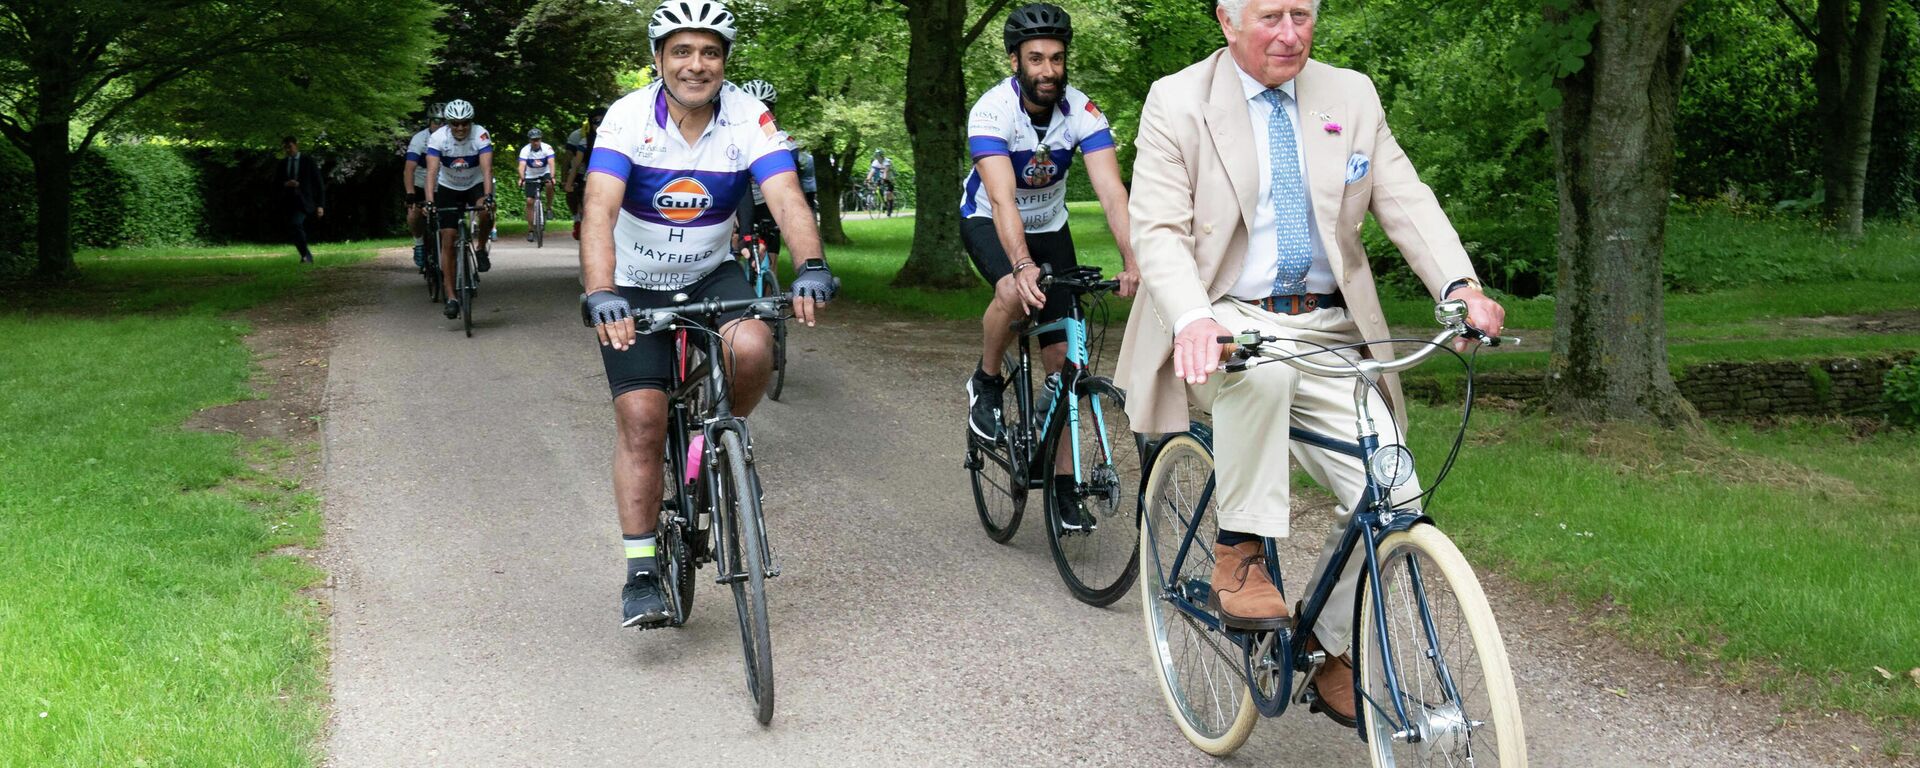 Британский принц Чарльз едет на велосипеде в Глостершире - Sputnik Узбекистан, 1920, 22.10.2021